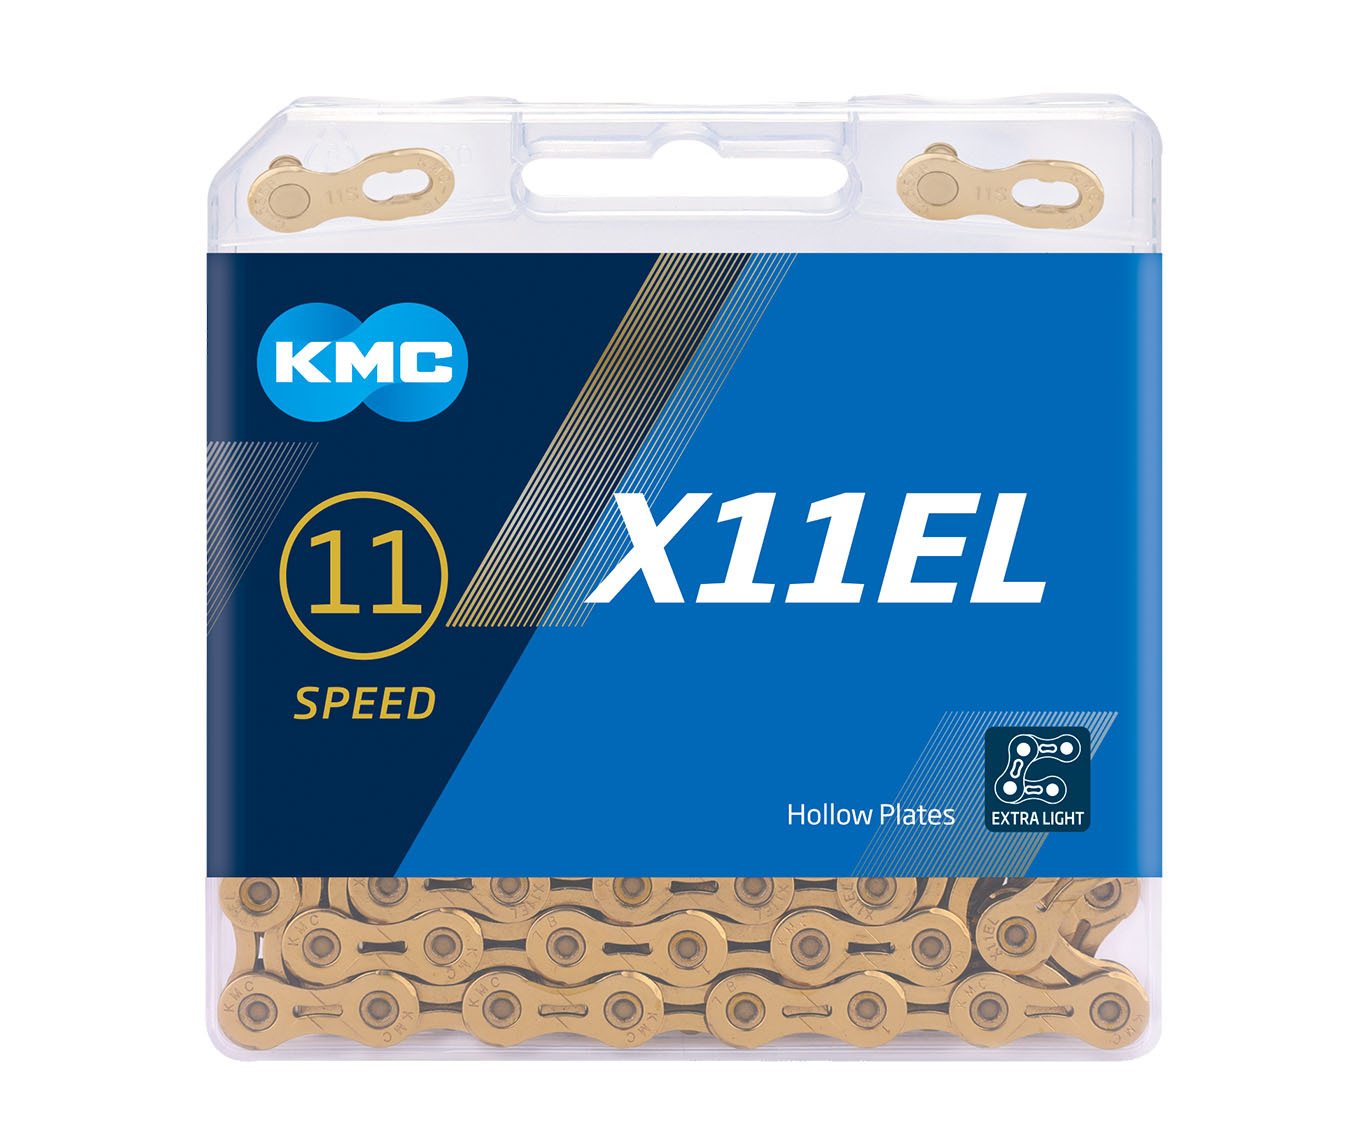 KMC X11EL 11 Speed Ti-Nitride Gold Chain 116L